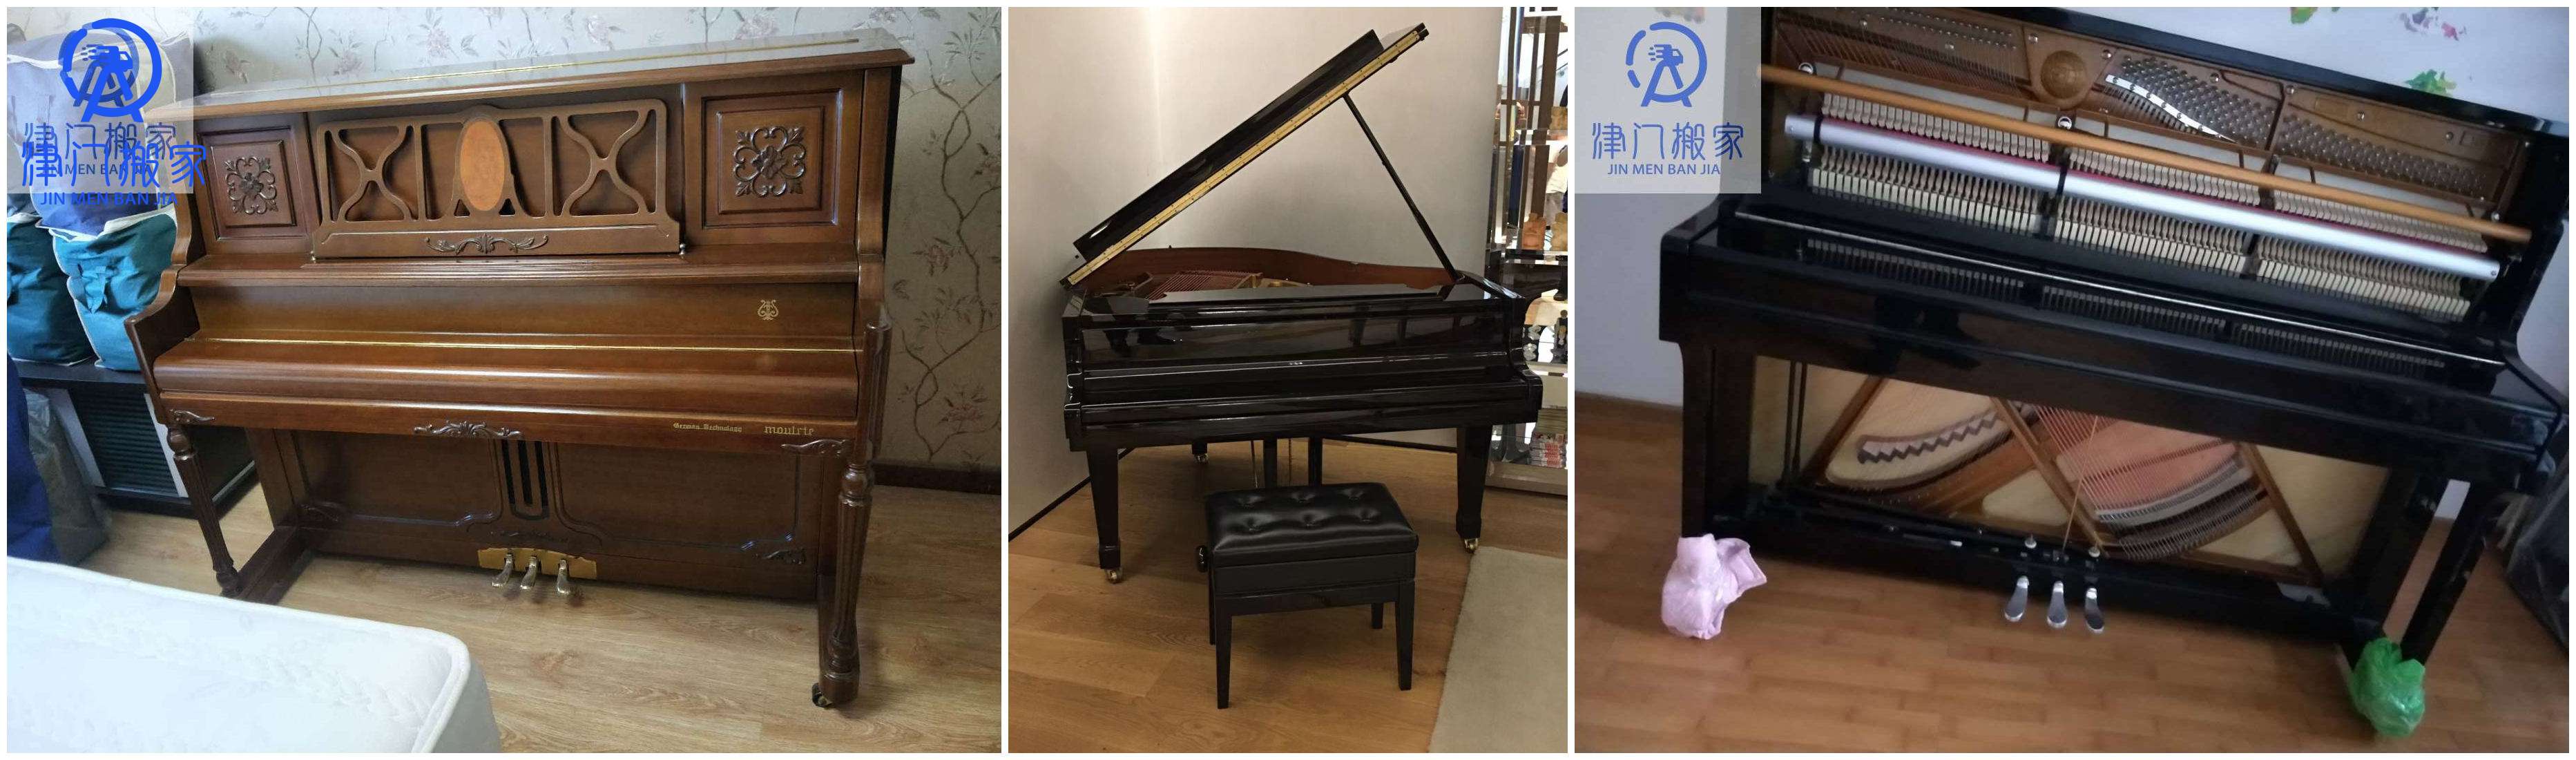 天津搬家公司搬运钢琴收费标准